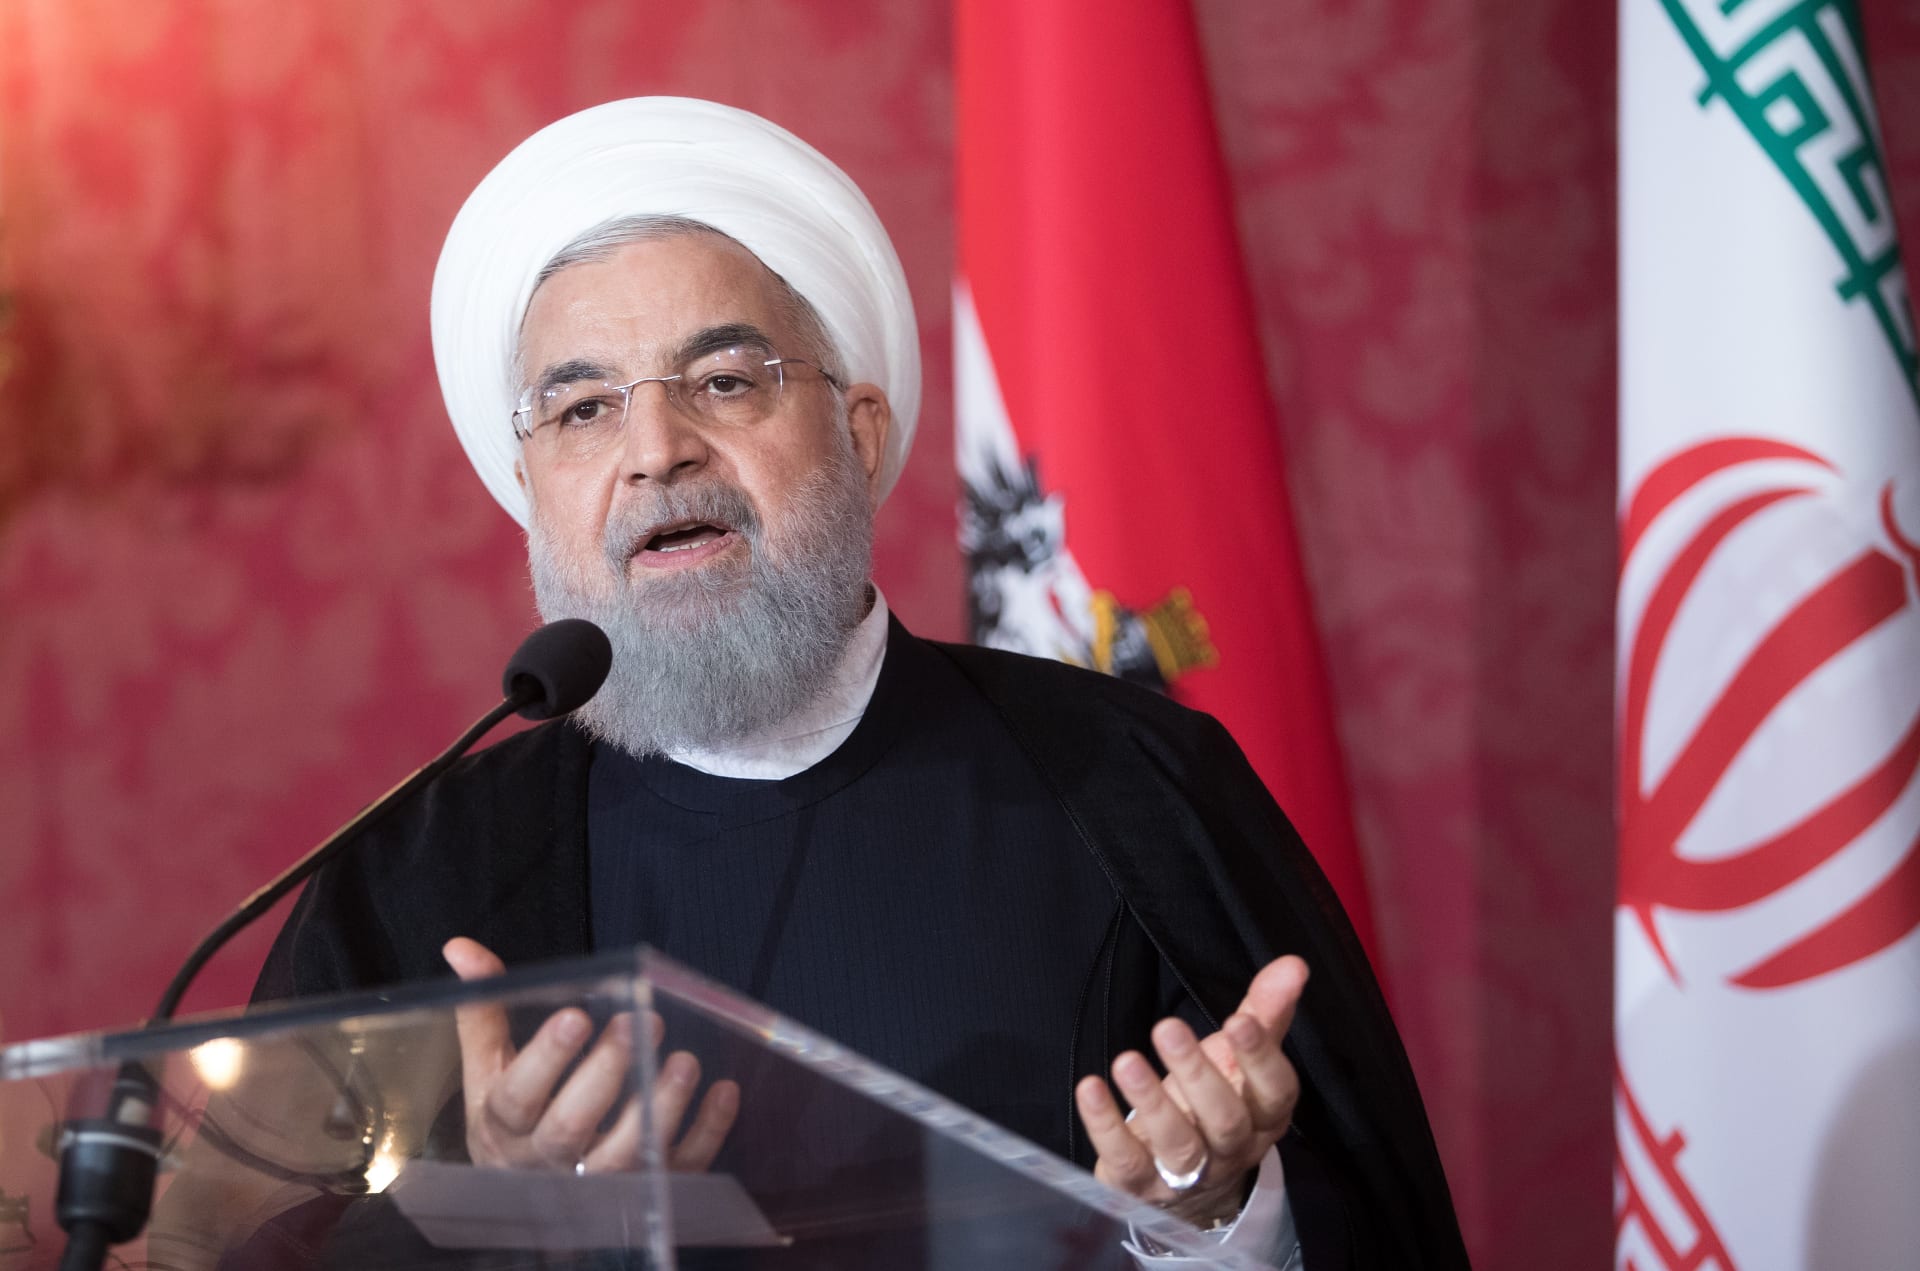 حسن روحاني: الدعوة للحوار في ظل العقوبات "لا معنى لها"